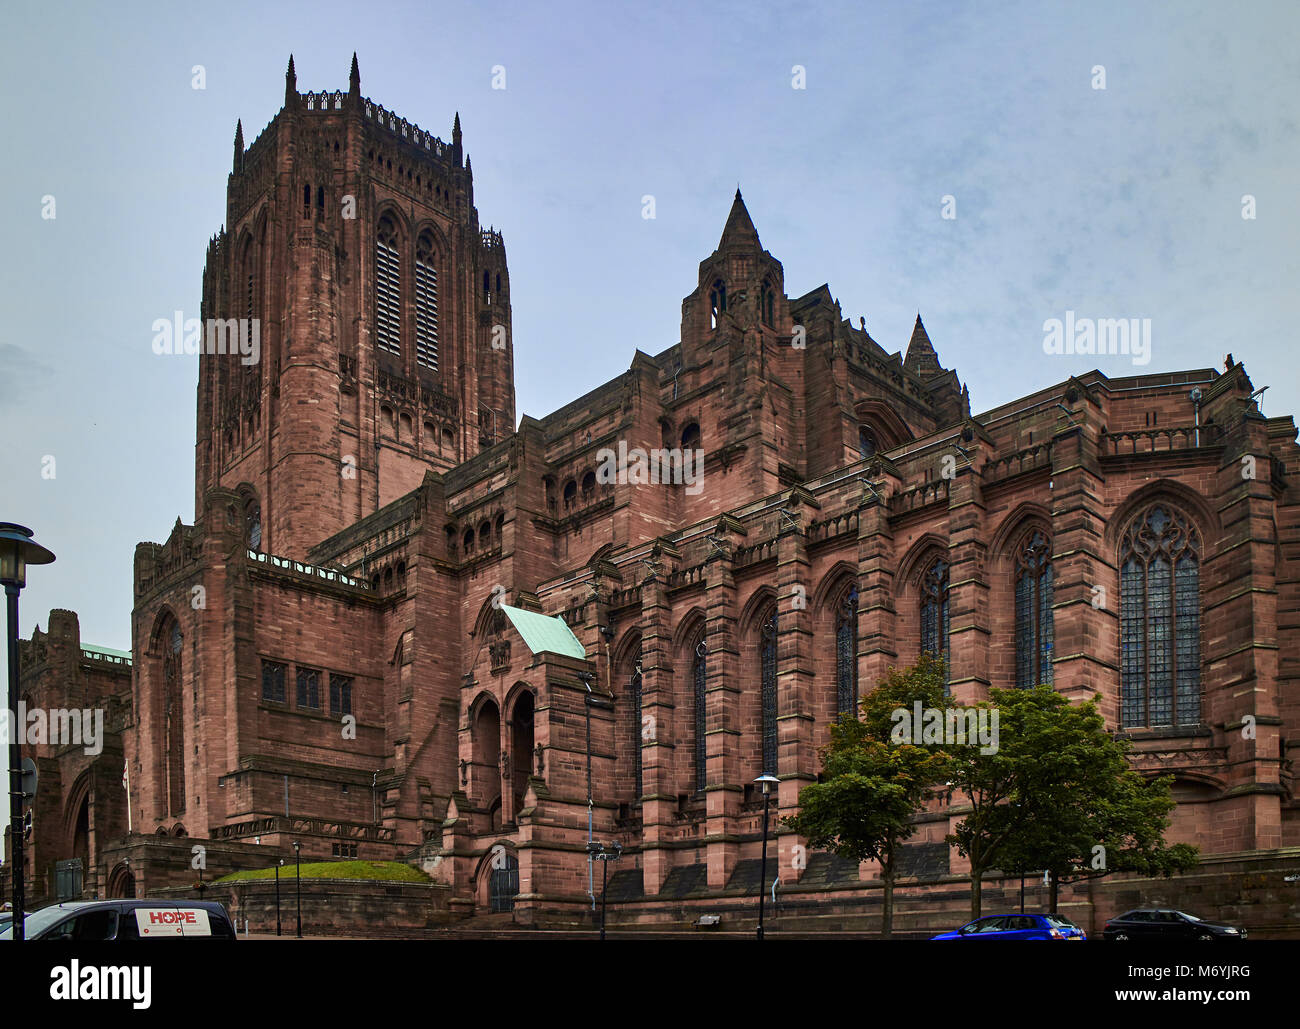 La Cathédrale de Liverpool (nom officiel de l'église cathédrale du Christ à Liverpool) est une cathédrale de l'Église d'Angleterre dans le centre-ville de Liverpool, en Angleterre Banque D'Images